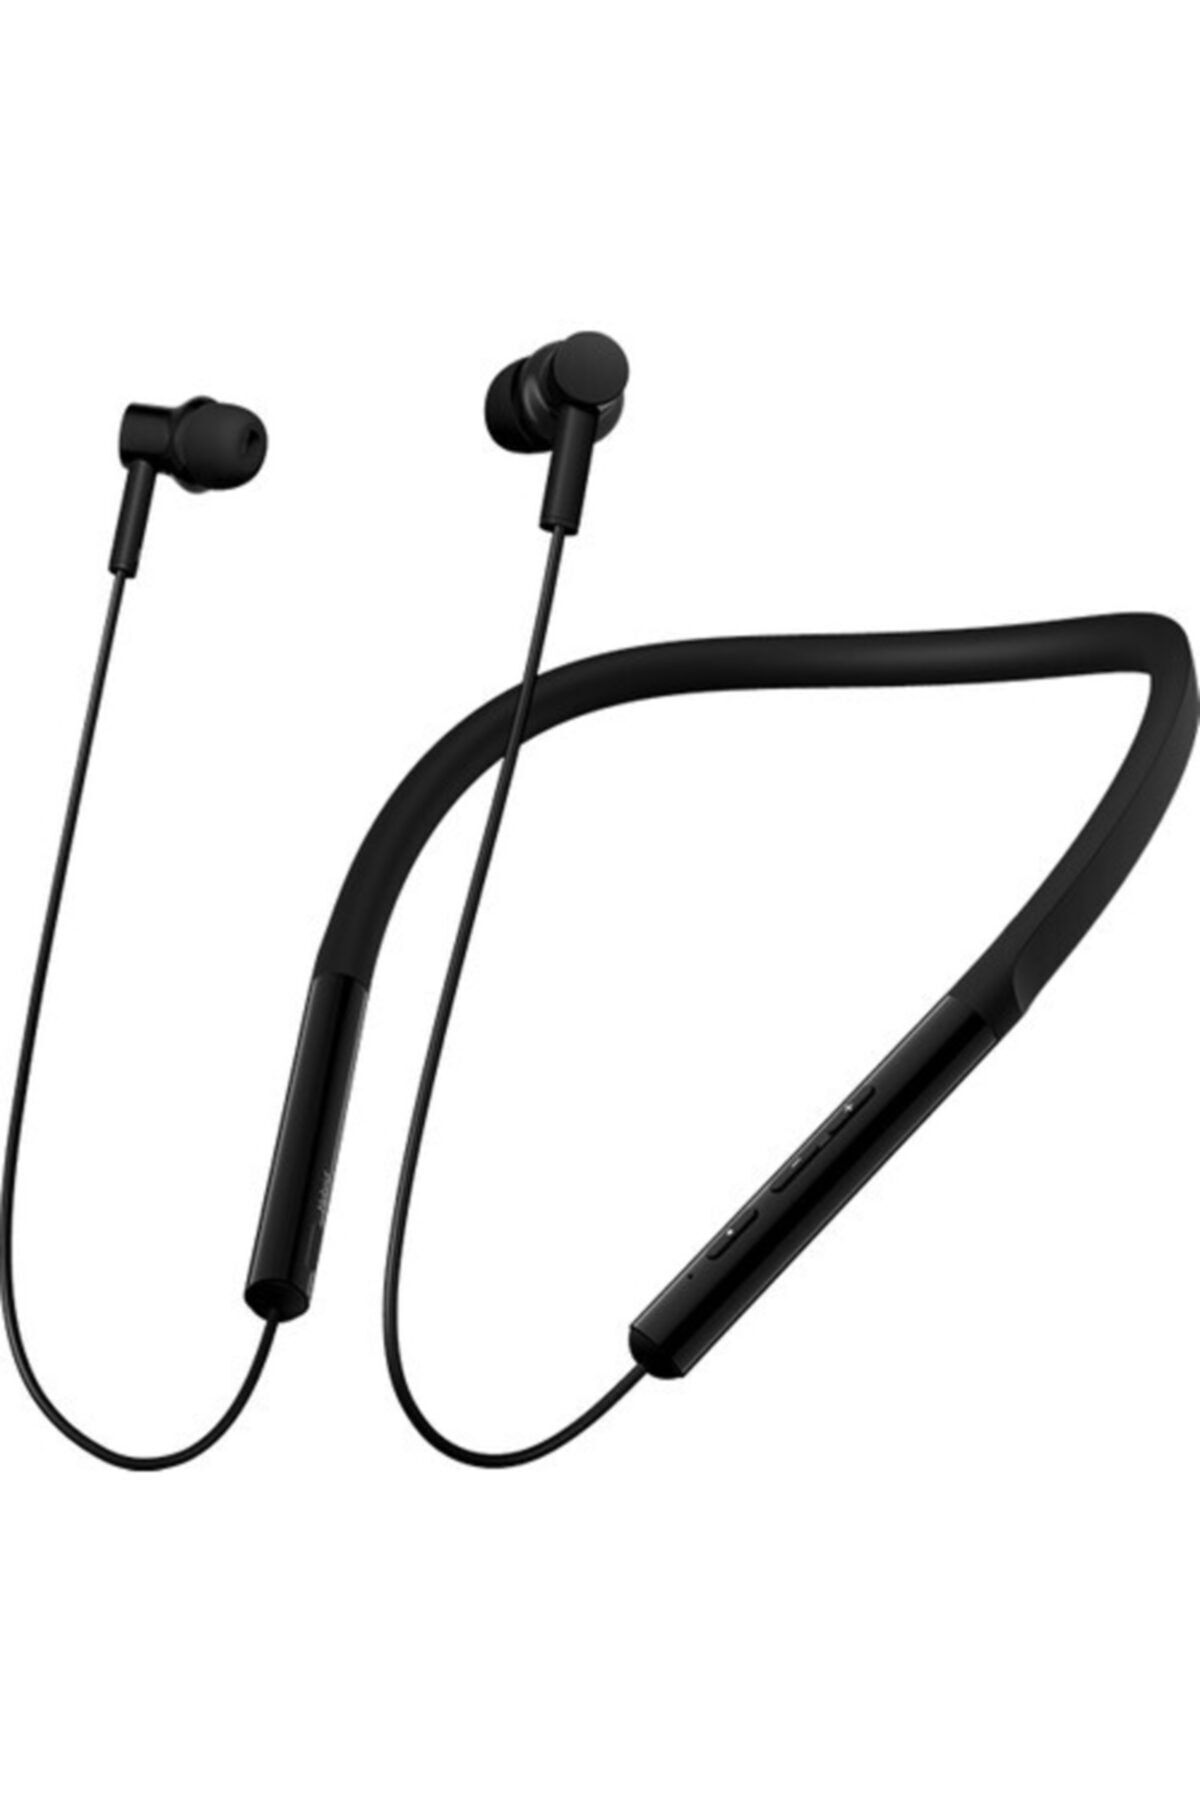 fyba Xiaomi Neckband Yaka Gürültü Önleyici Boyun Bandı Telefon Kulaklığı Hd Mikrofonlu Kulaklık